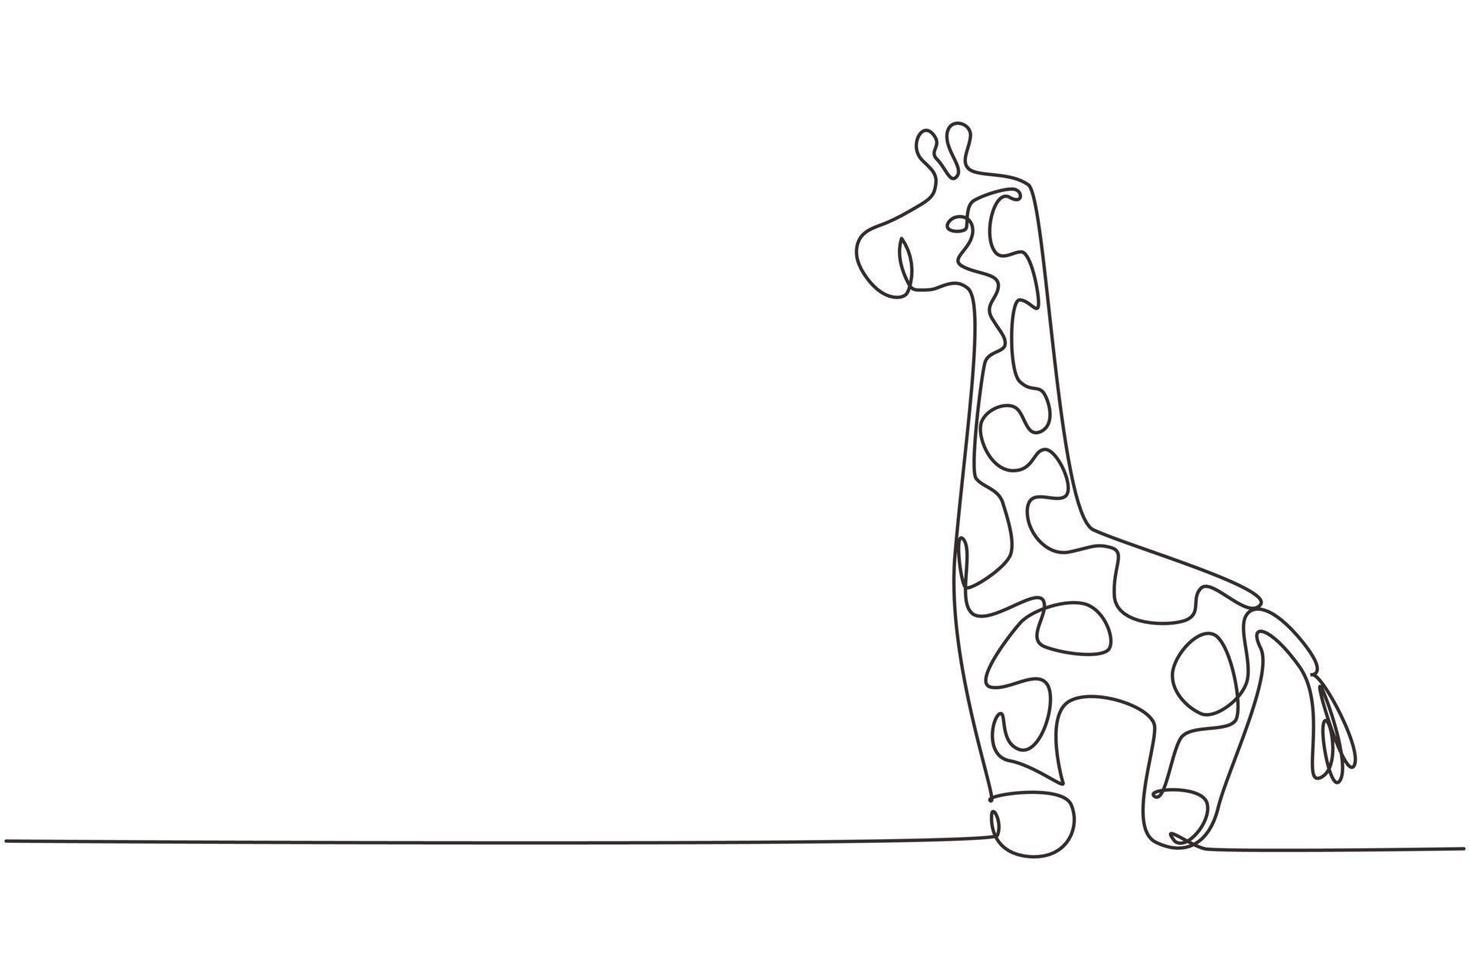 singola linea continua disegno carino bambola di peluche giraffa. burattino di peluche giraffa. giraffa di peluche. giocattoli giraffa gialla per bambini. illustrazione vettoriale di disegno grafico dinamico di una linea